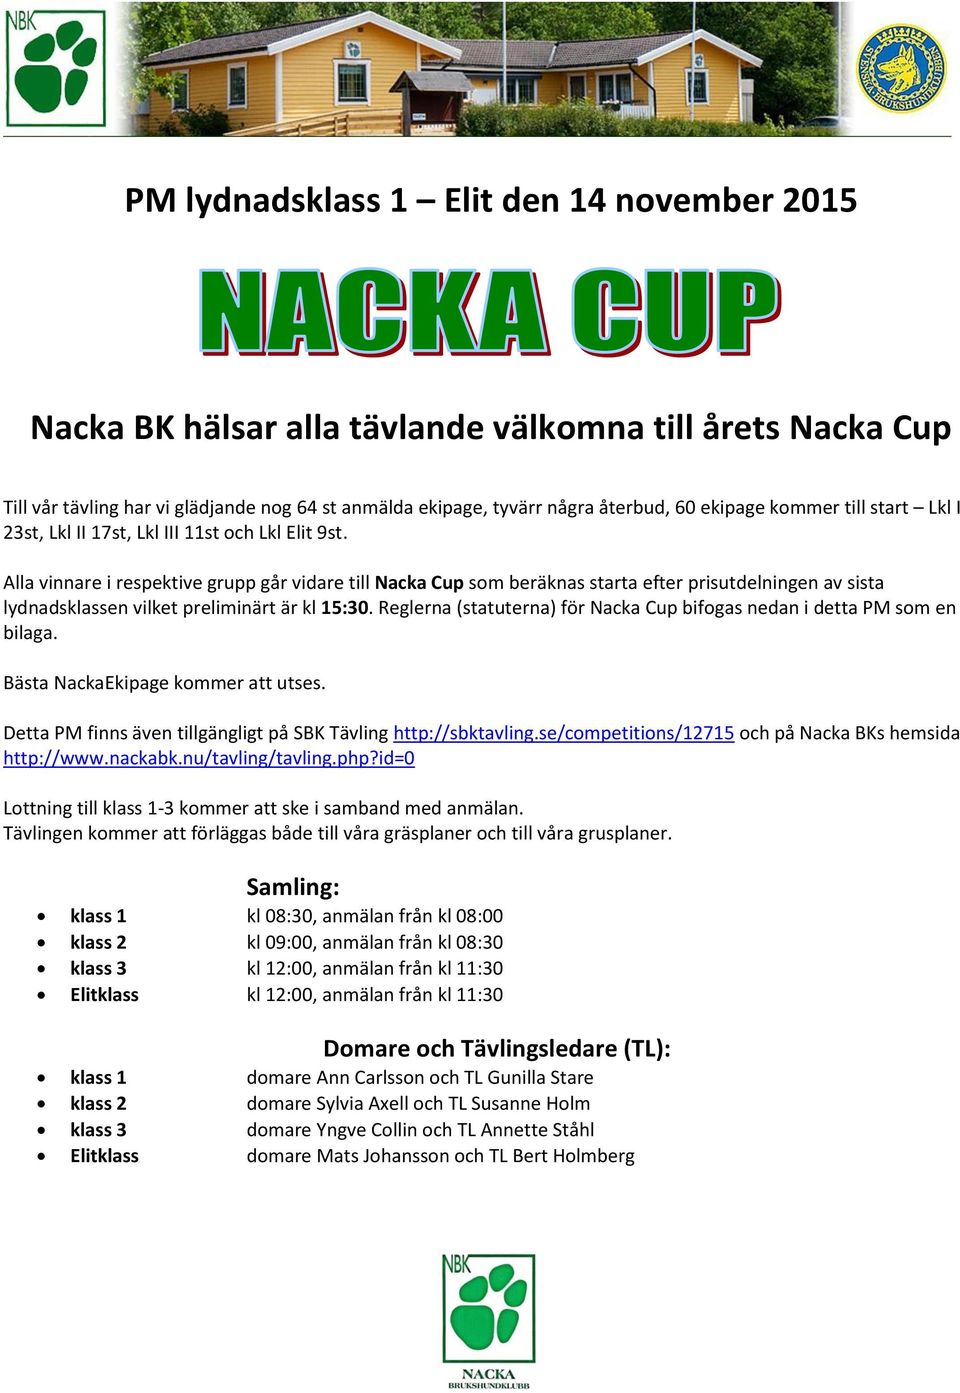 Alla vinnare i respektive grupp går vidare till Nacka Cup som beräknas starta efter prisutdelningen av sista lydnadsklassen vilket preliminärt är kl 15:30.